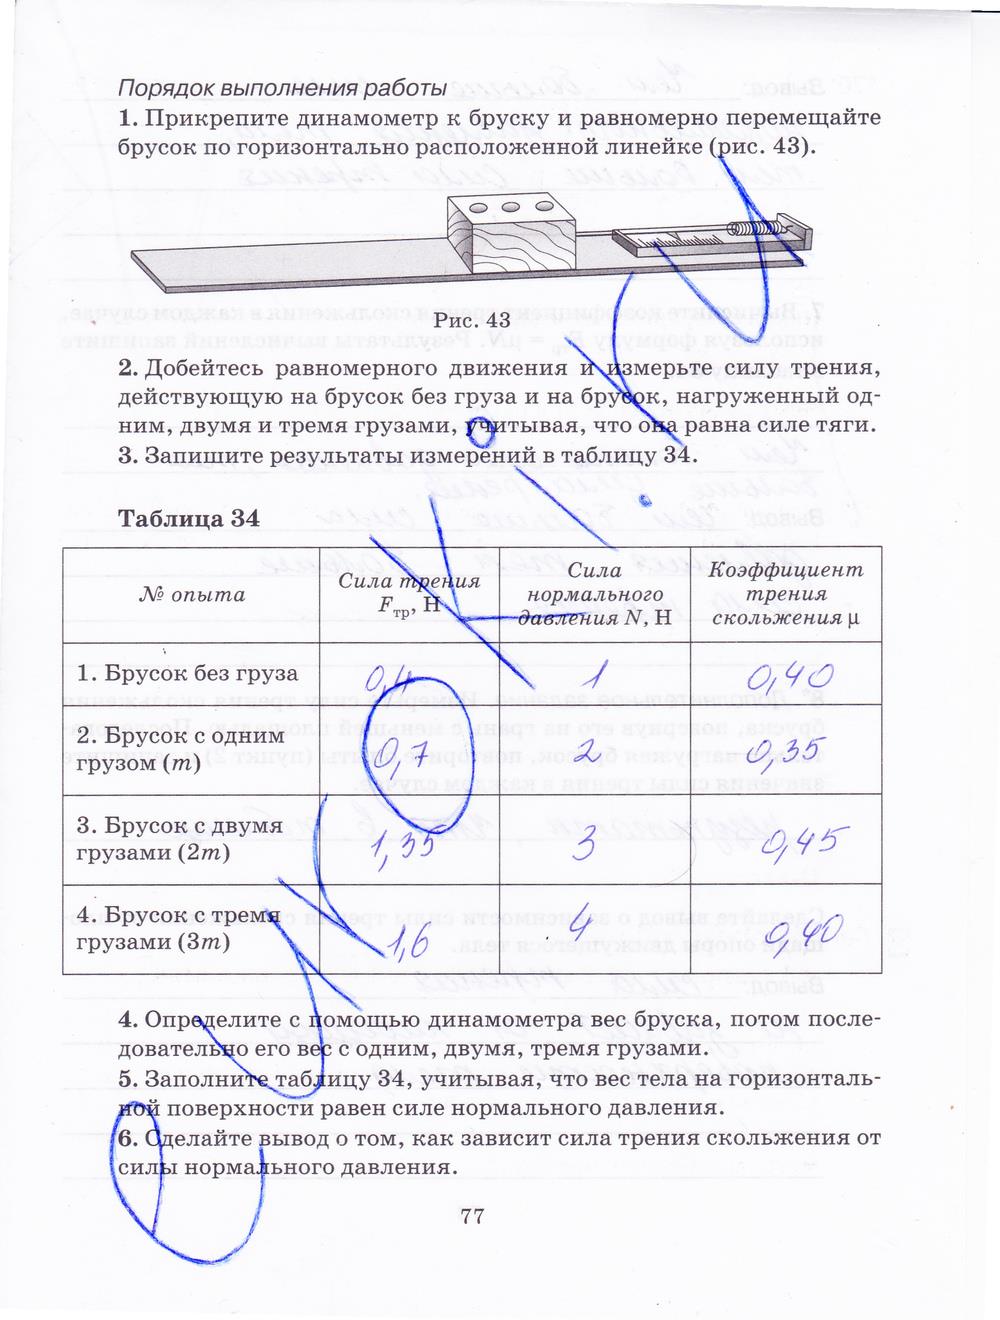 гдз 7 класс рабочая тетрадь страница 77 физика Пурышева, Важеевская